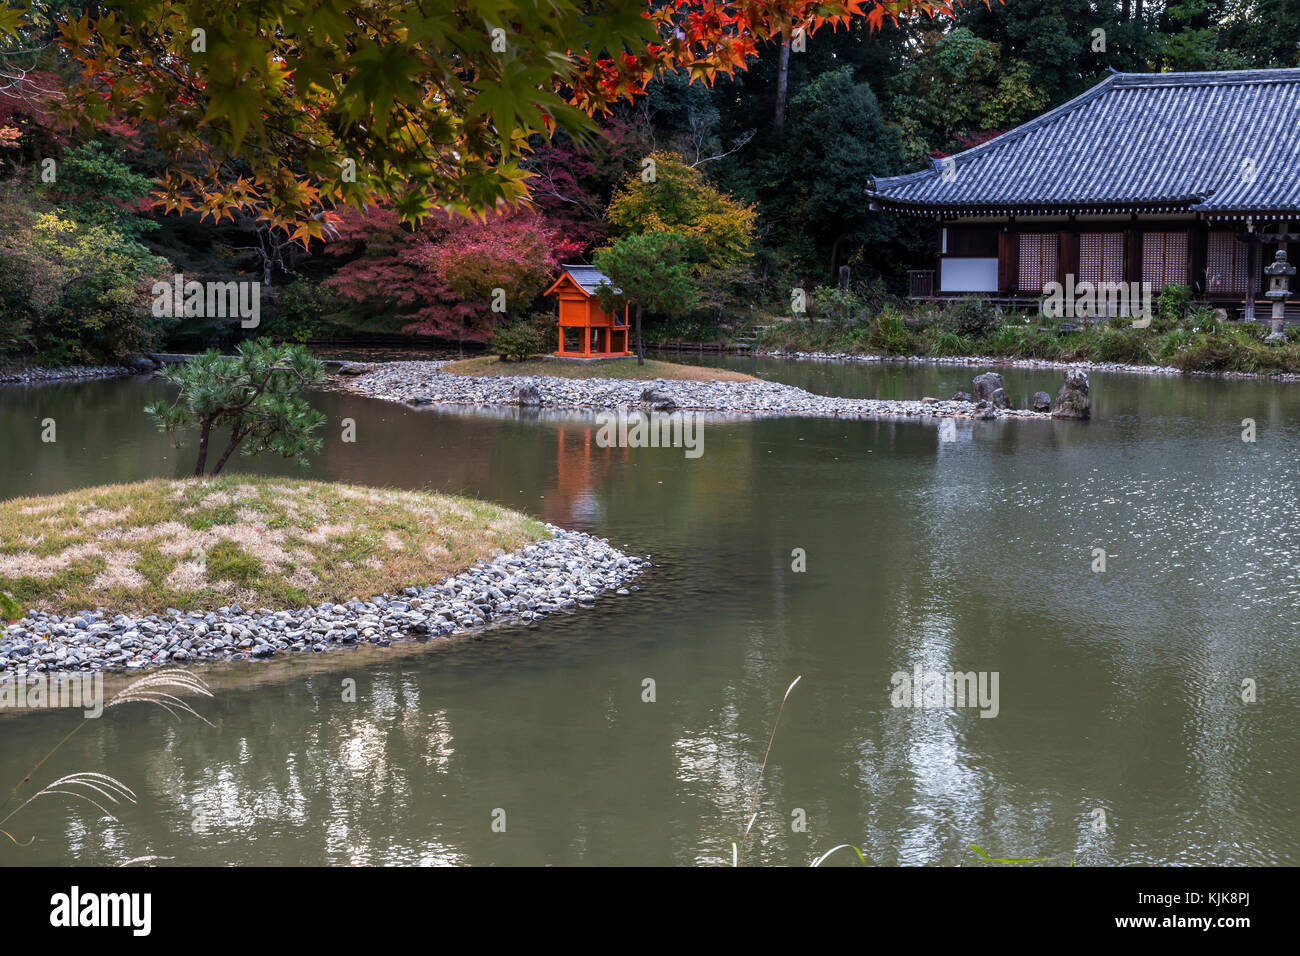 Joruri-ji se encuentra idealmente ubicado en las colinas de Nara y la única existente era Heian Amida Hall con nueve imágenes de amida y los nueve niveles de Foto de stock